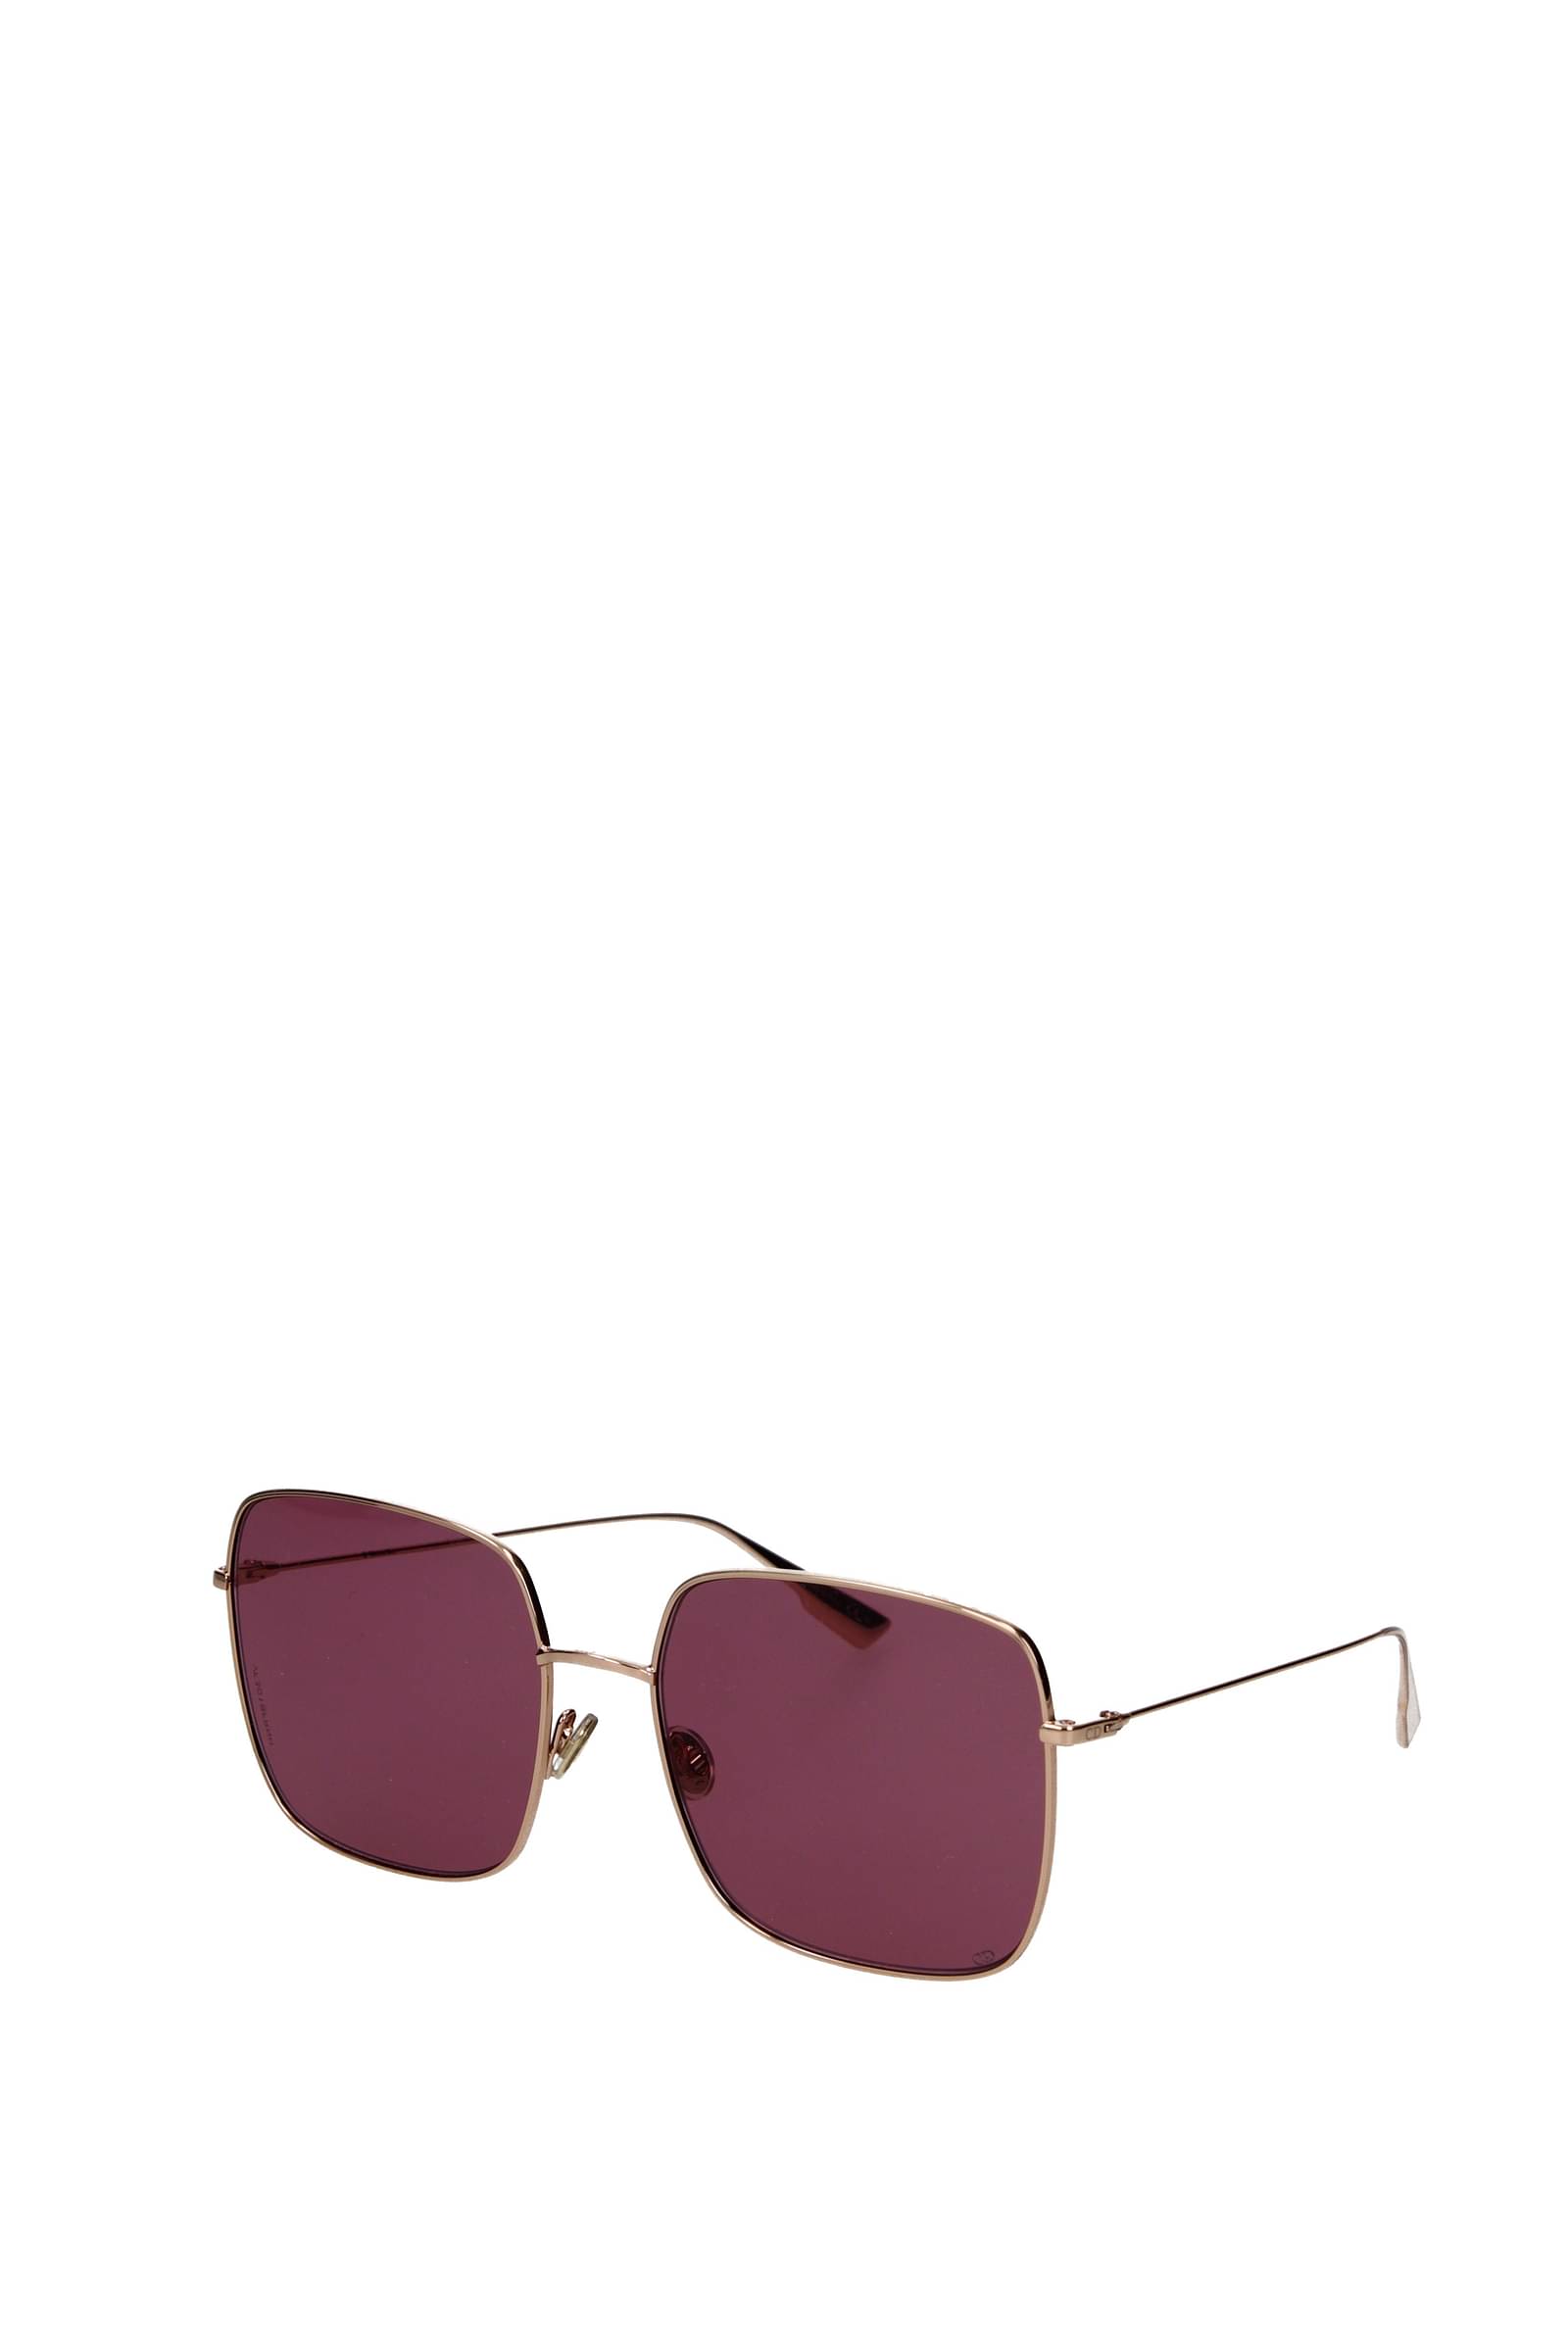 Dior Sunglasses Fall-Winter 2012-2013